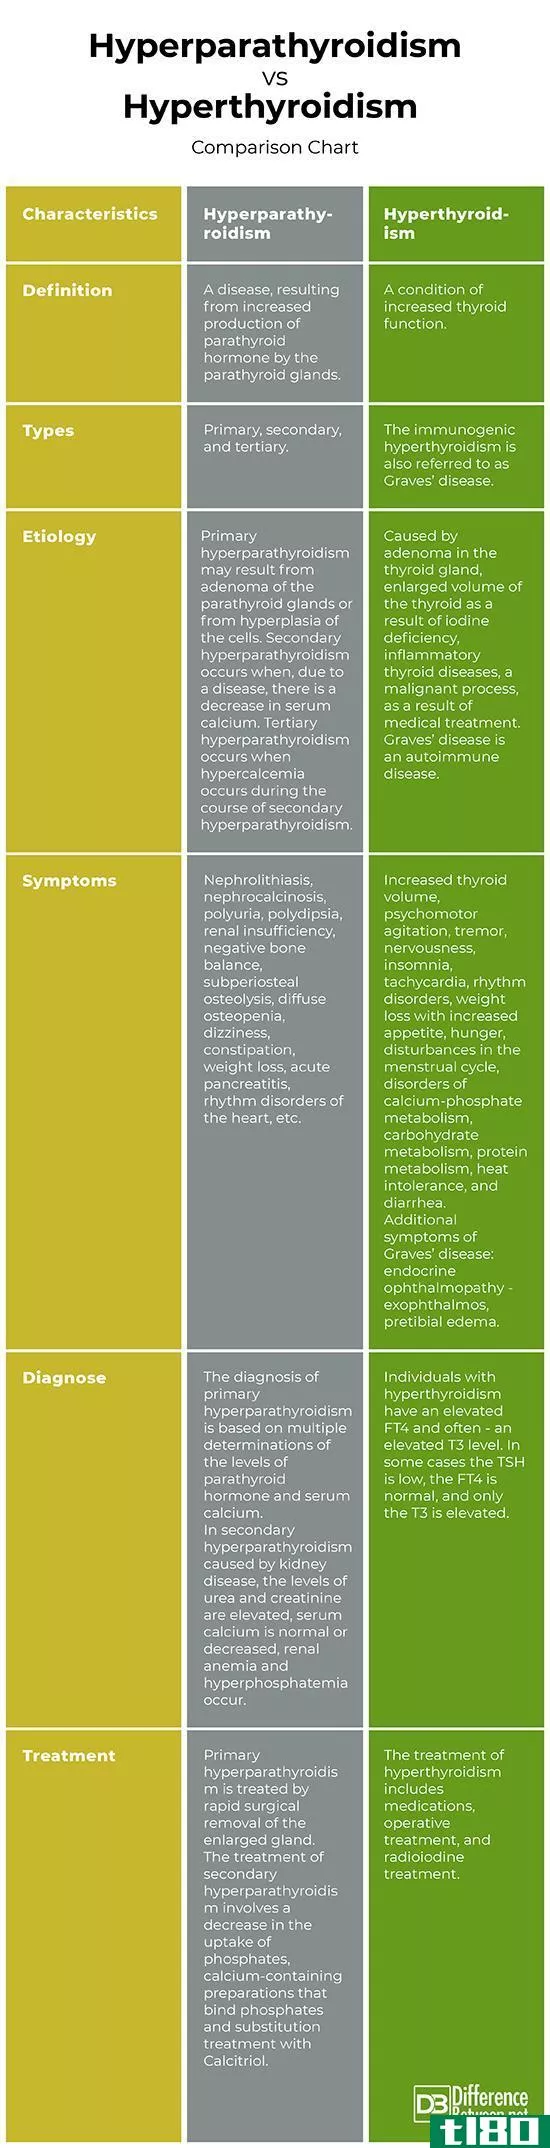 甲状旁腺功能亢进(hyperparathyroidi**)和甲状腺机能亢进(hyperthyroidi**)的区别